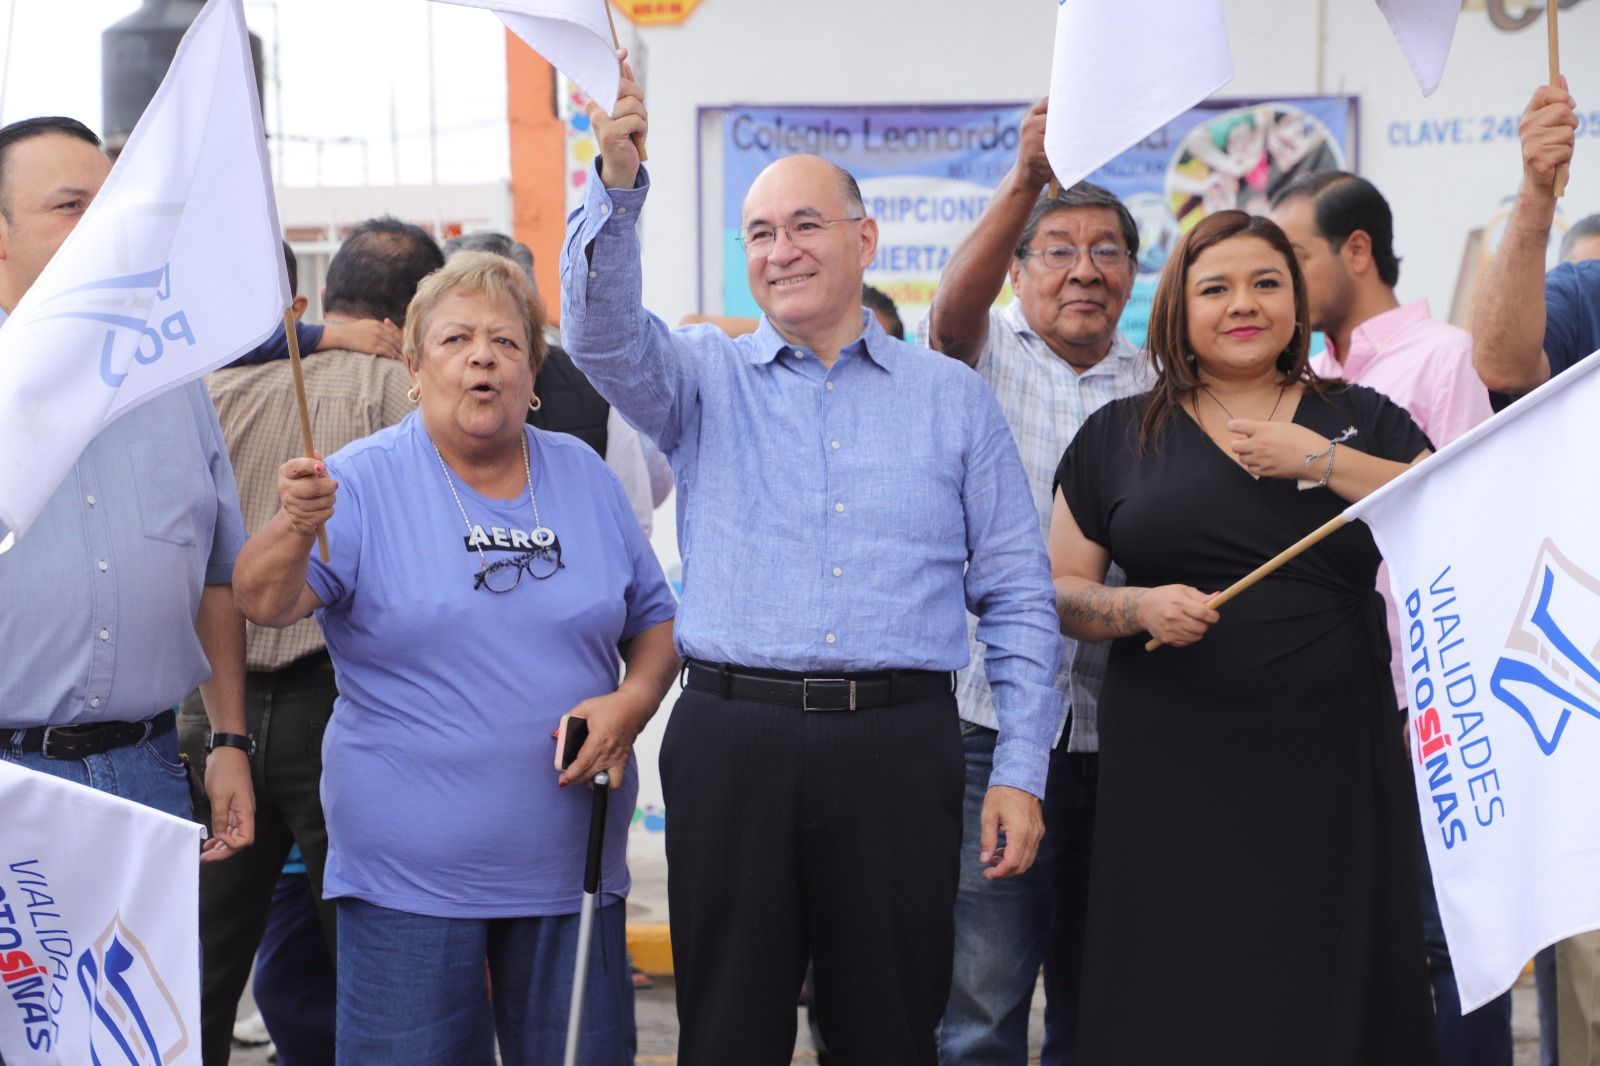 El Gobierno del Alcalde Galindo no para: seguirán las obras hasta el final del periodo